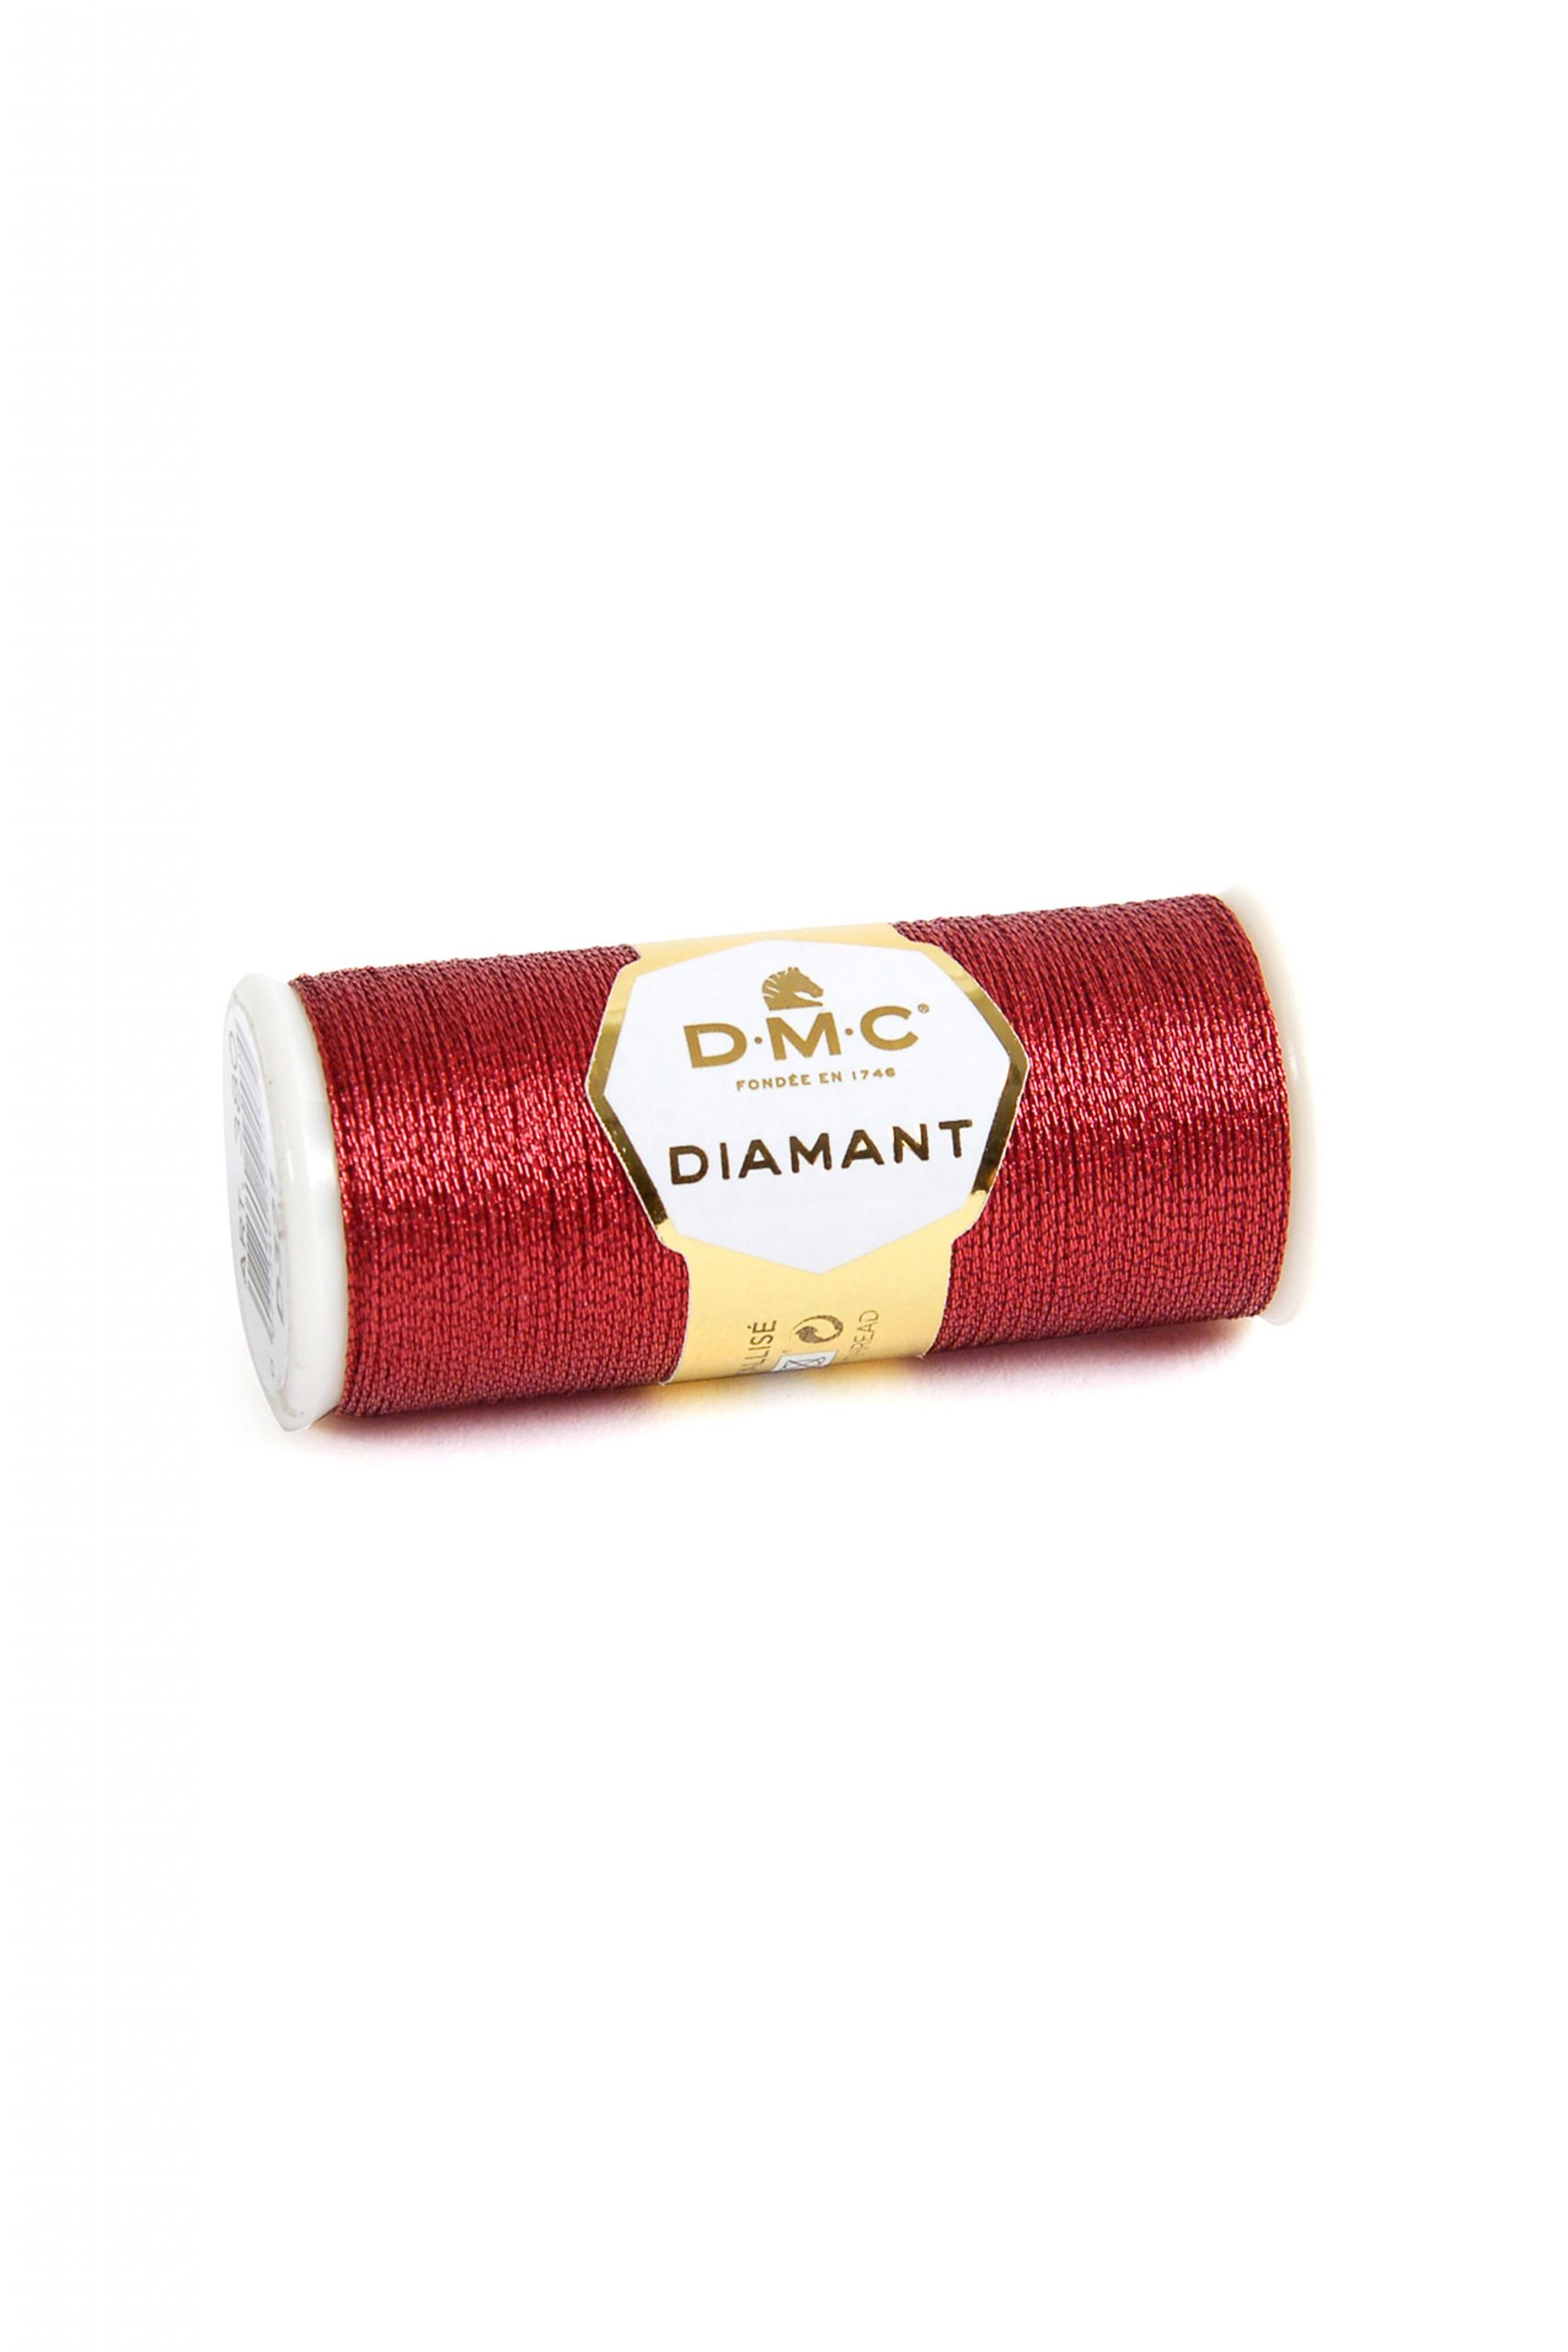 DMC Diamant - D321